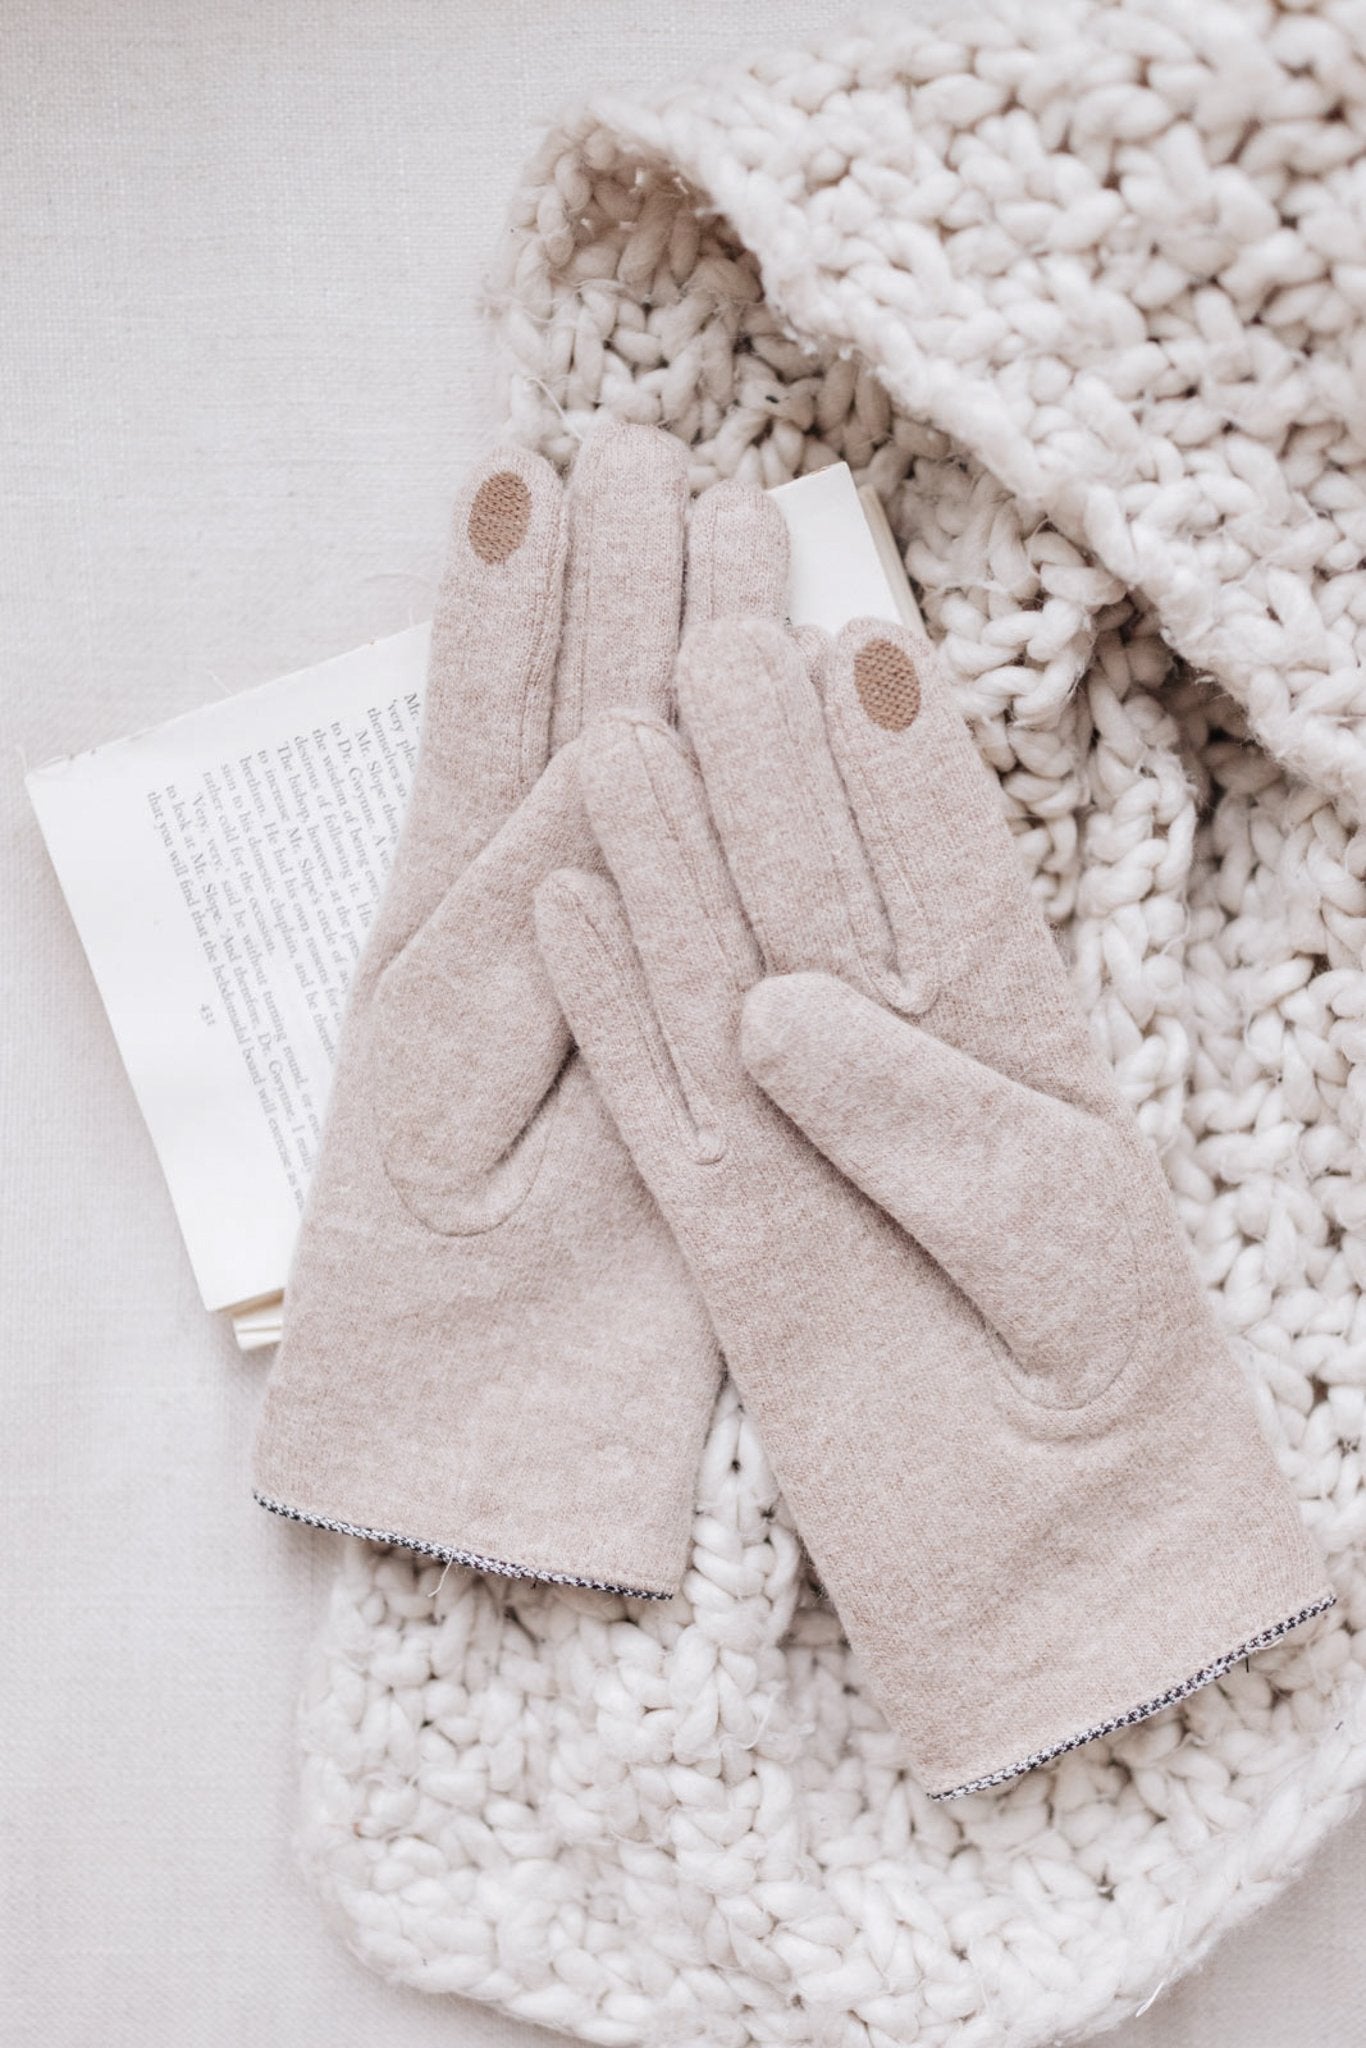 Keeping' Warm Beige Wool Gloves